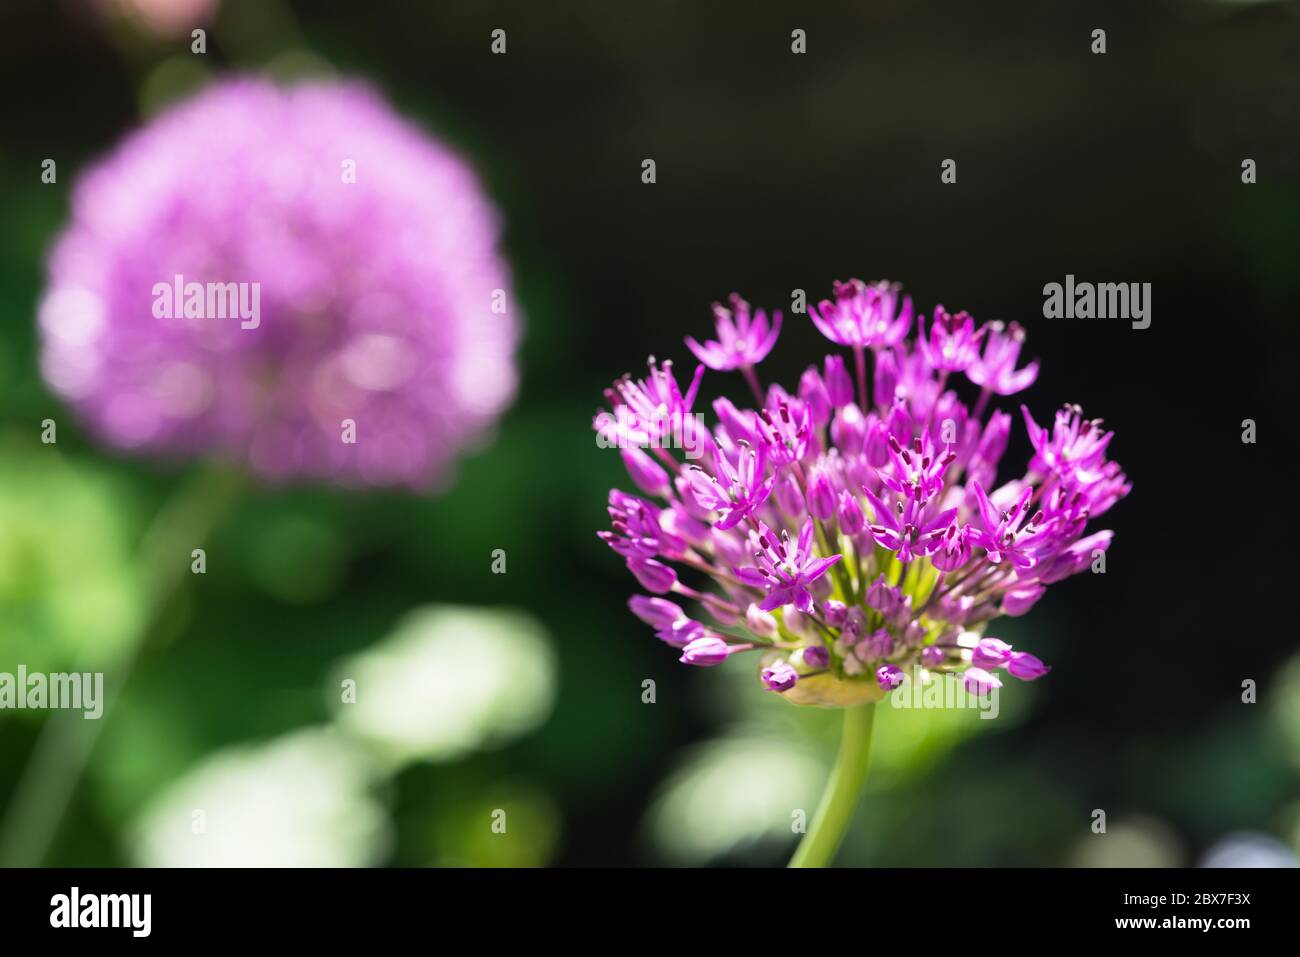 Flowering purple Allium Stock Photo